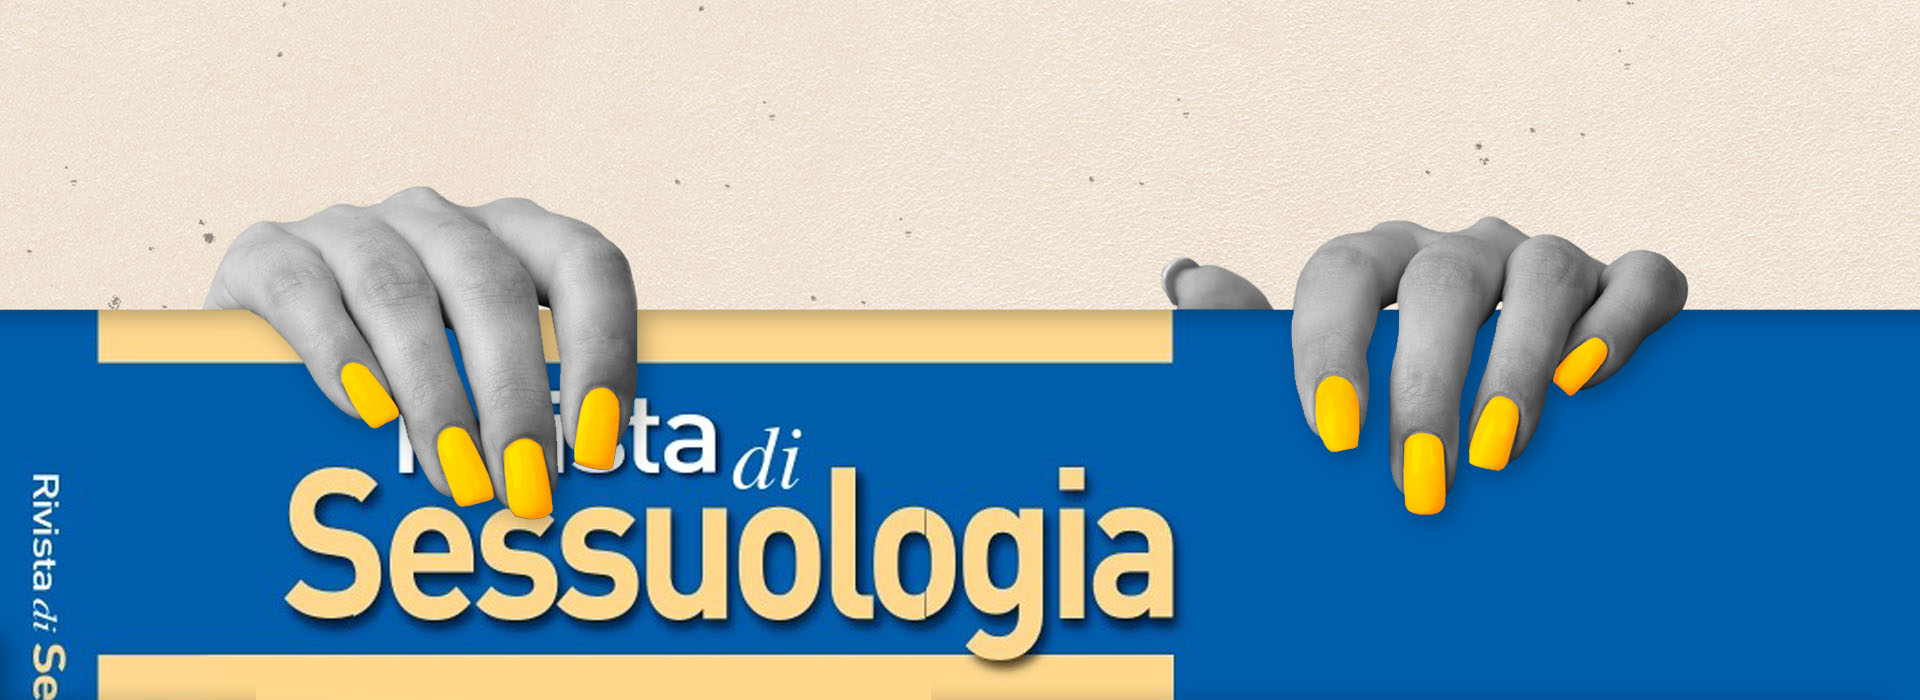 III Congresso Nazionale Federazione Italiana di Sessuologia Scientifica - CIS